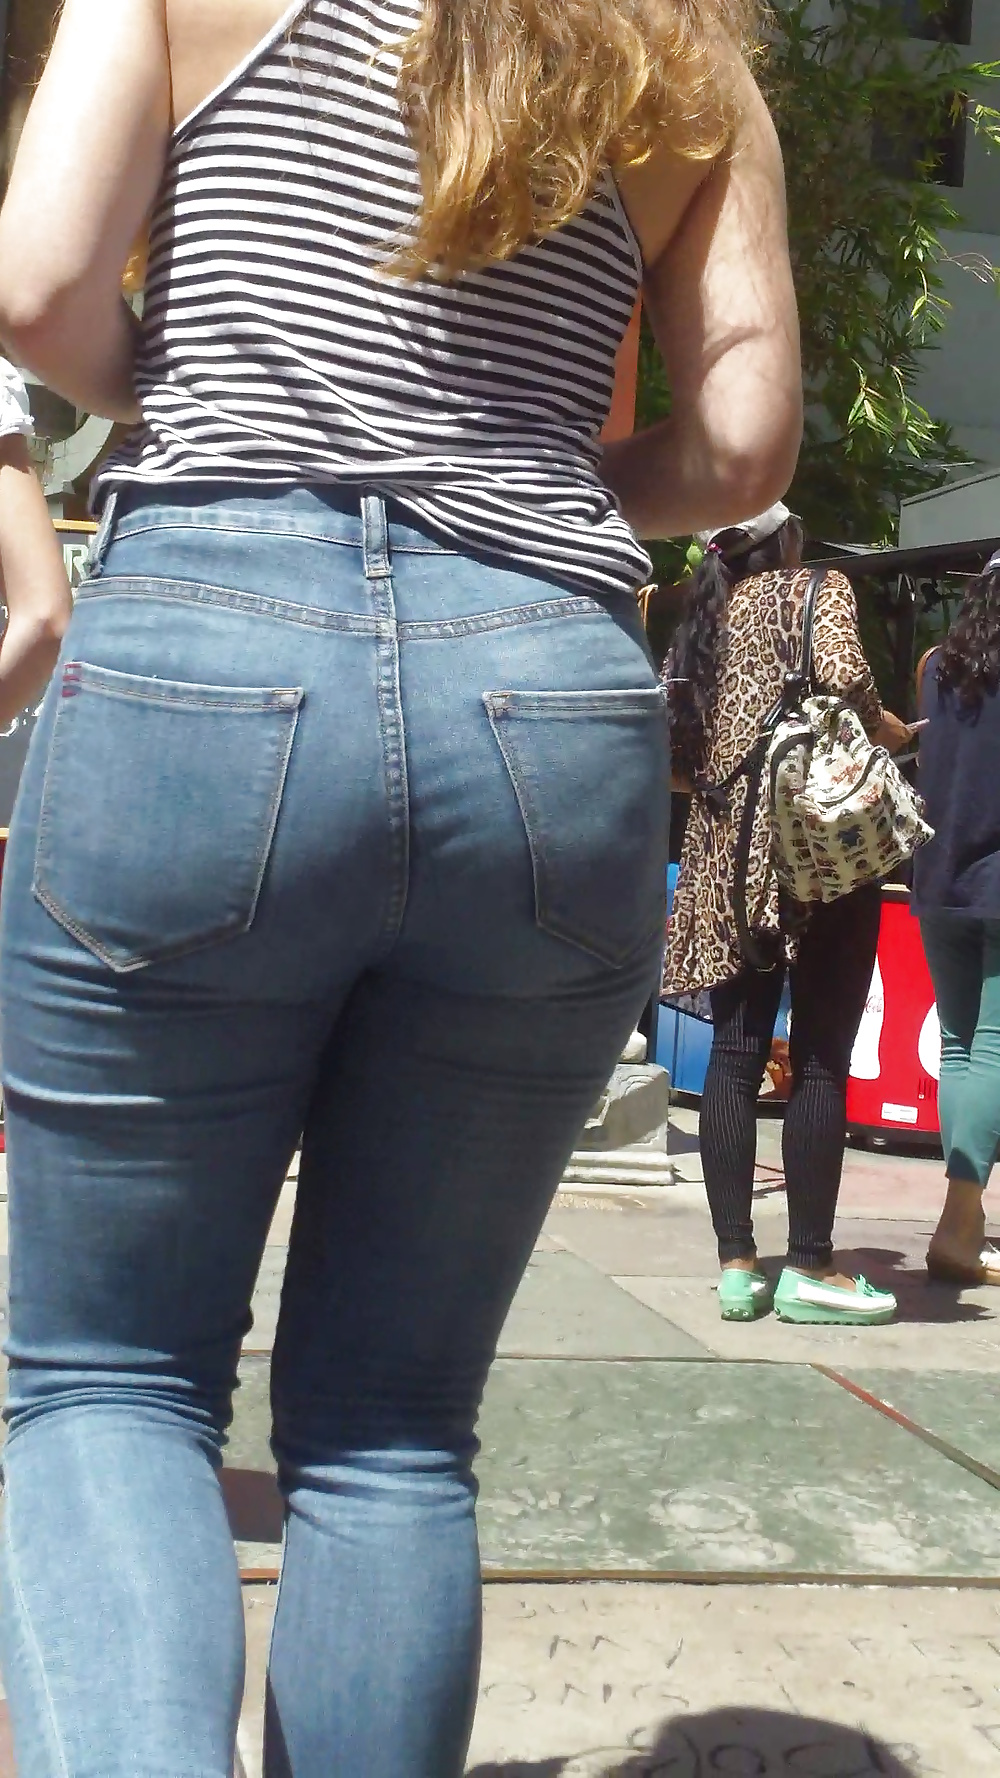 Popular teen girls ass & butt in jeans Part 5 #28734098